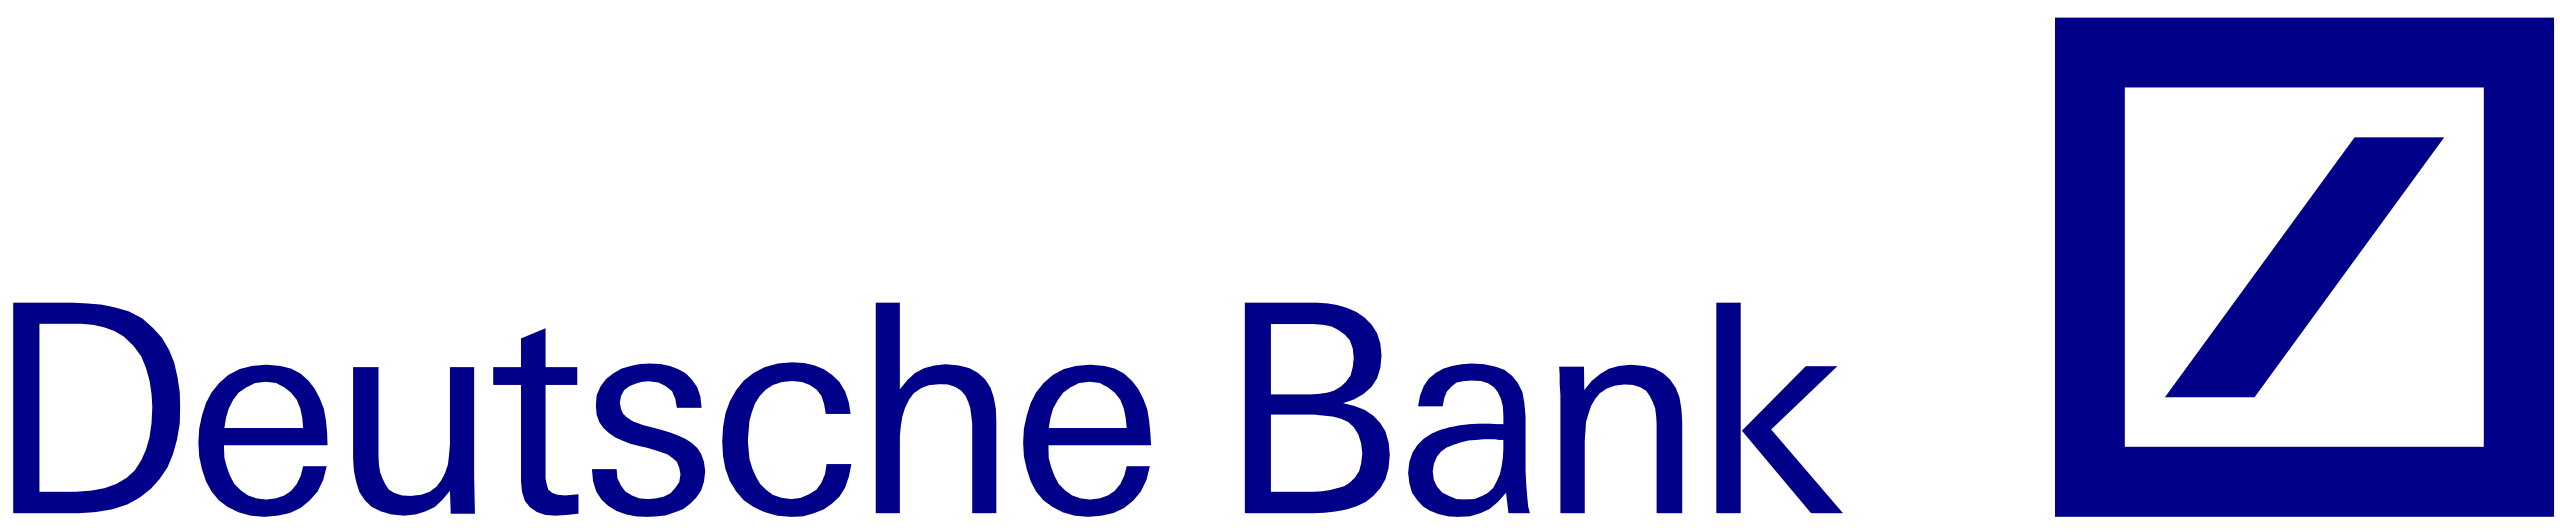 logo deutsche bank